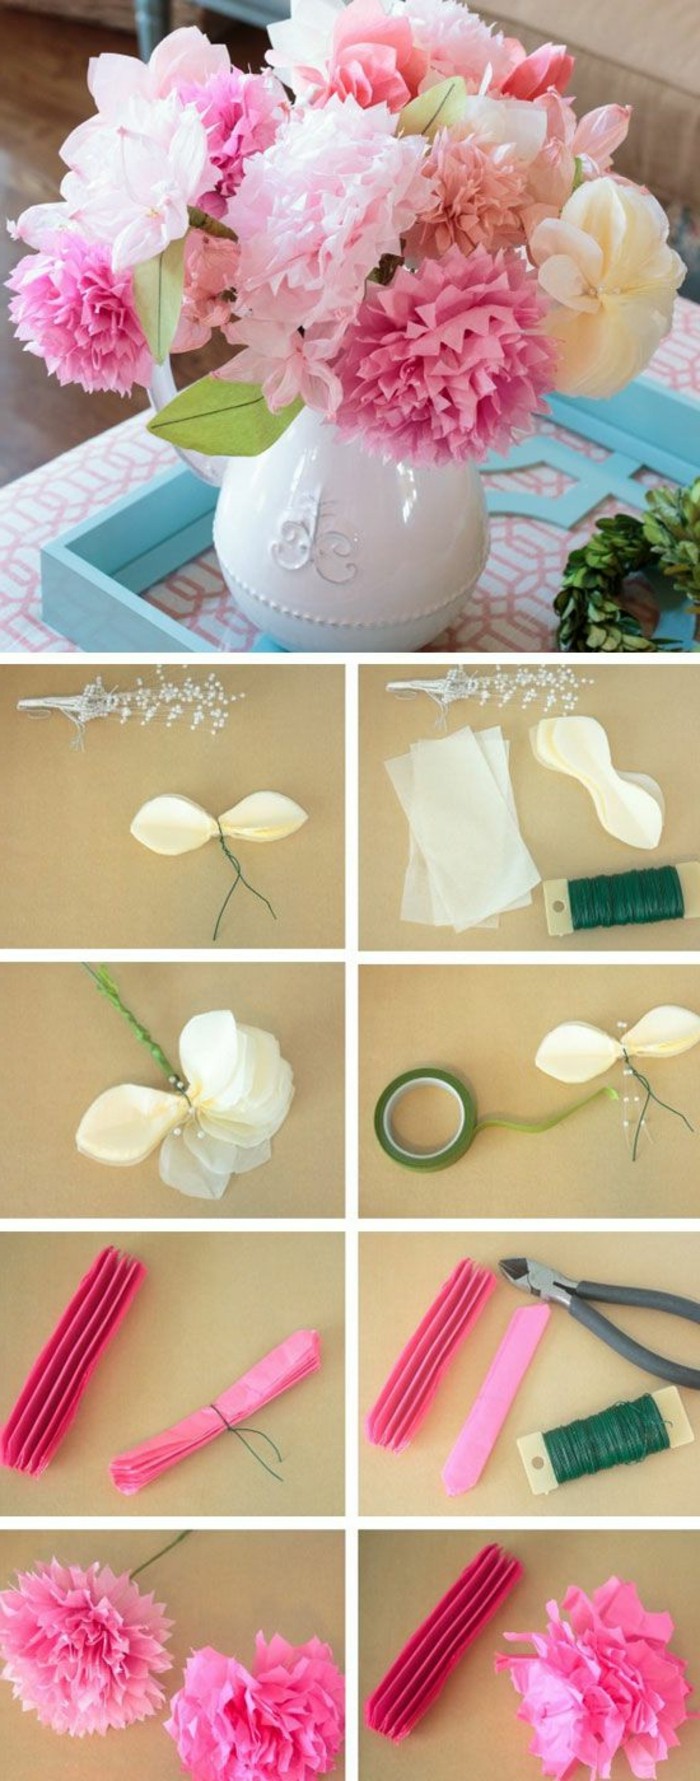 0-diy-bouquet-deco-mariage-table-avec-fleurs-en-serviettes-colores-diy-idee-mariage-pas-cher